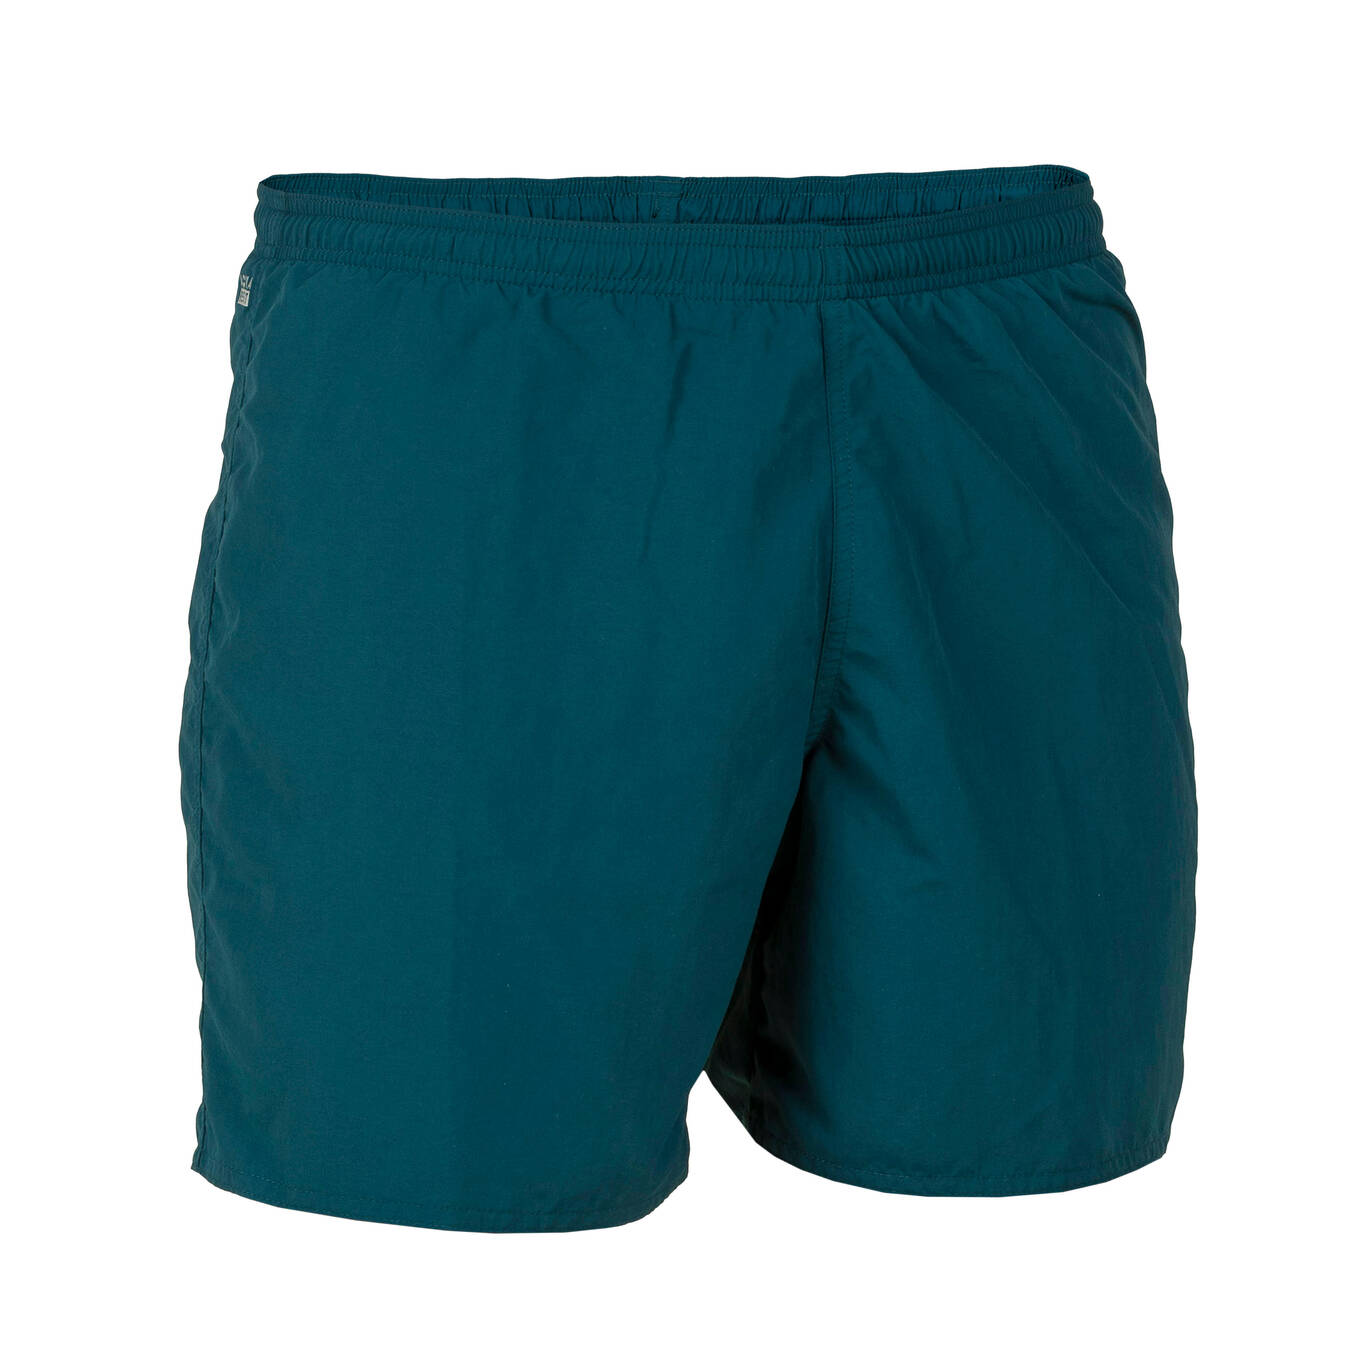 Celana Renang Pria - Swimshort 100 Basic - Turquoise Green